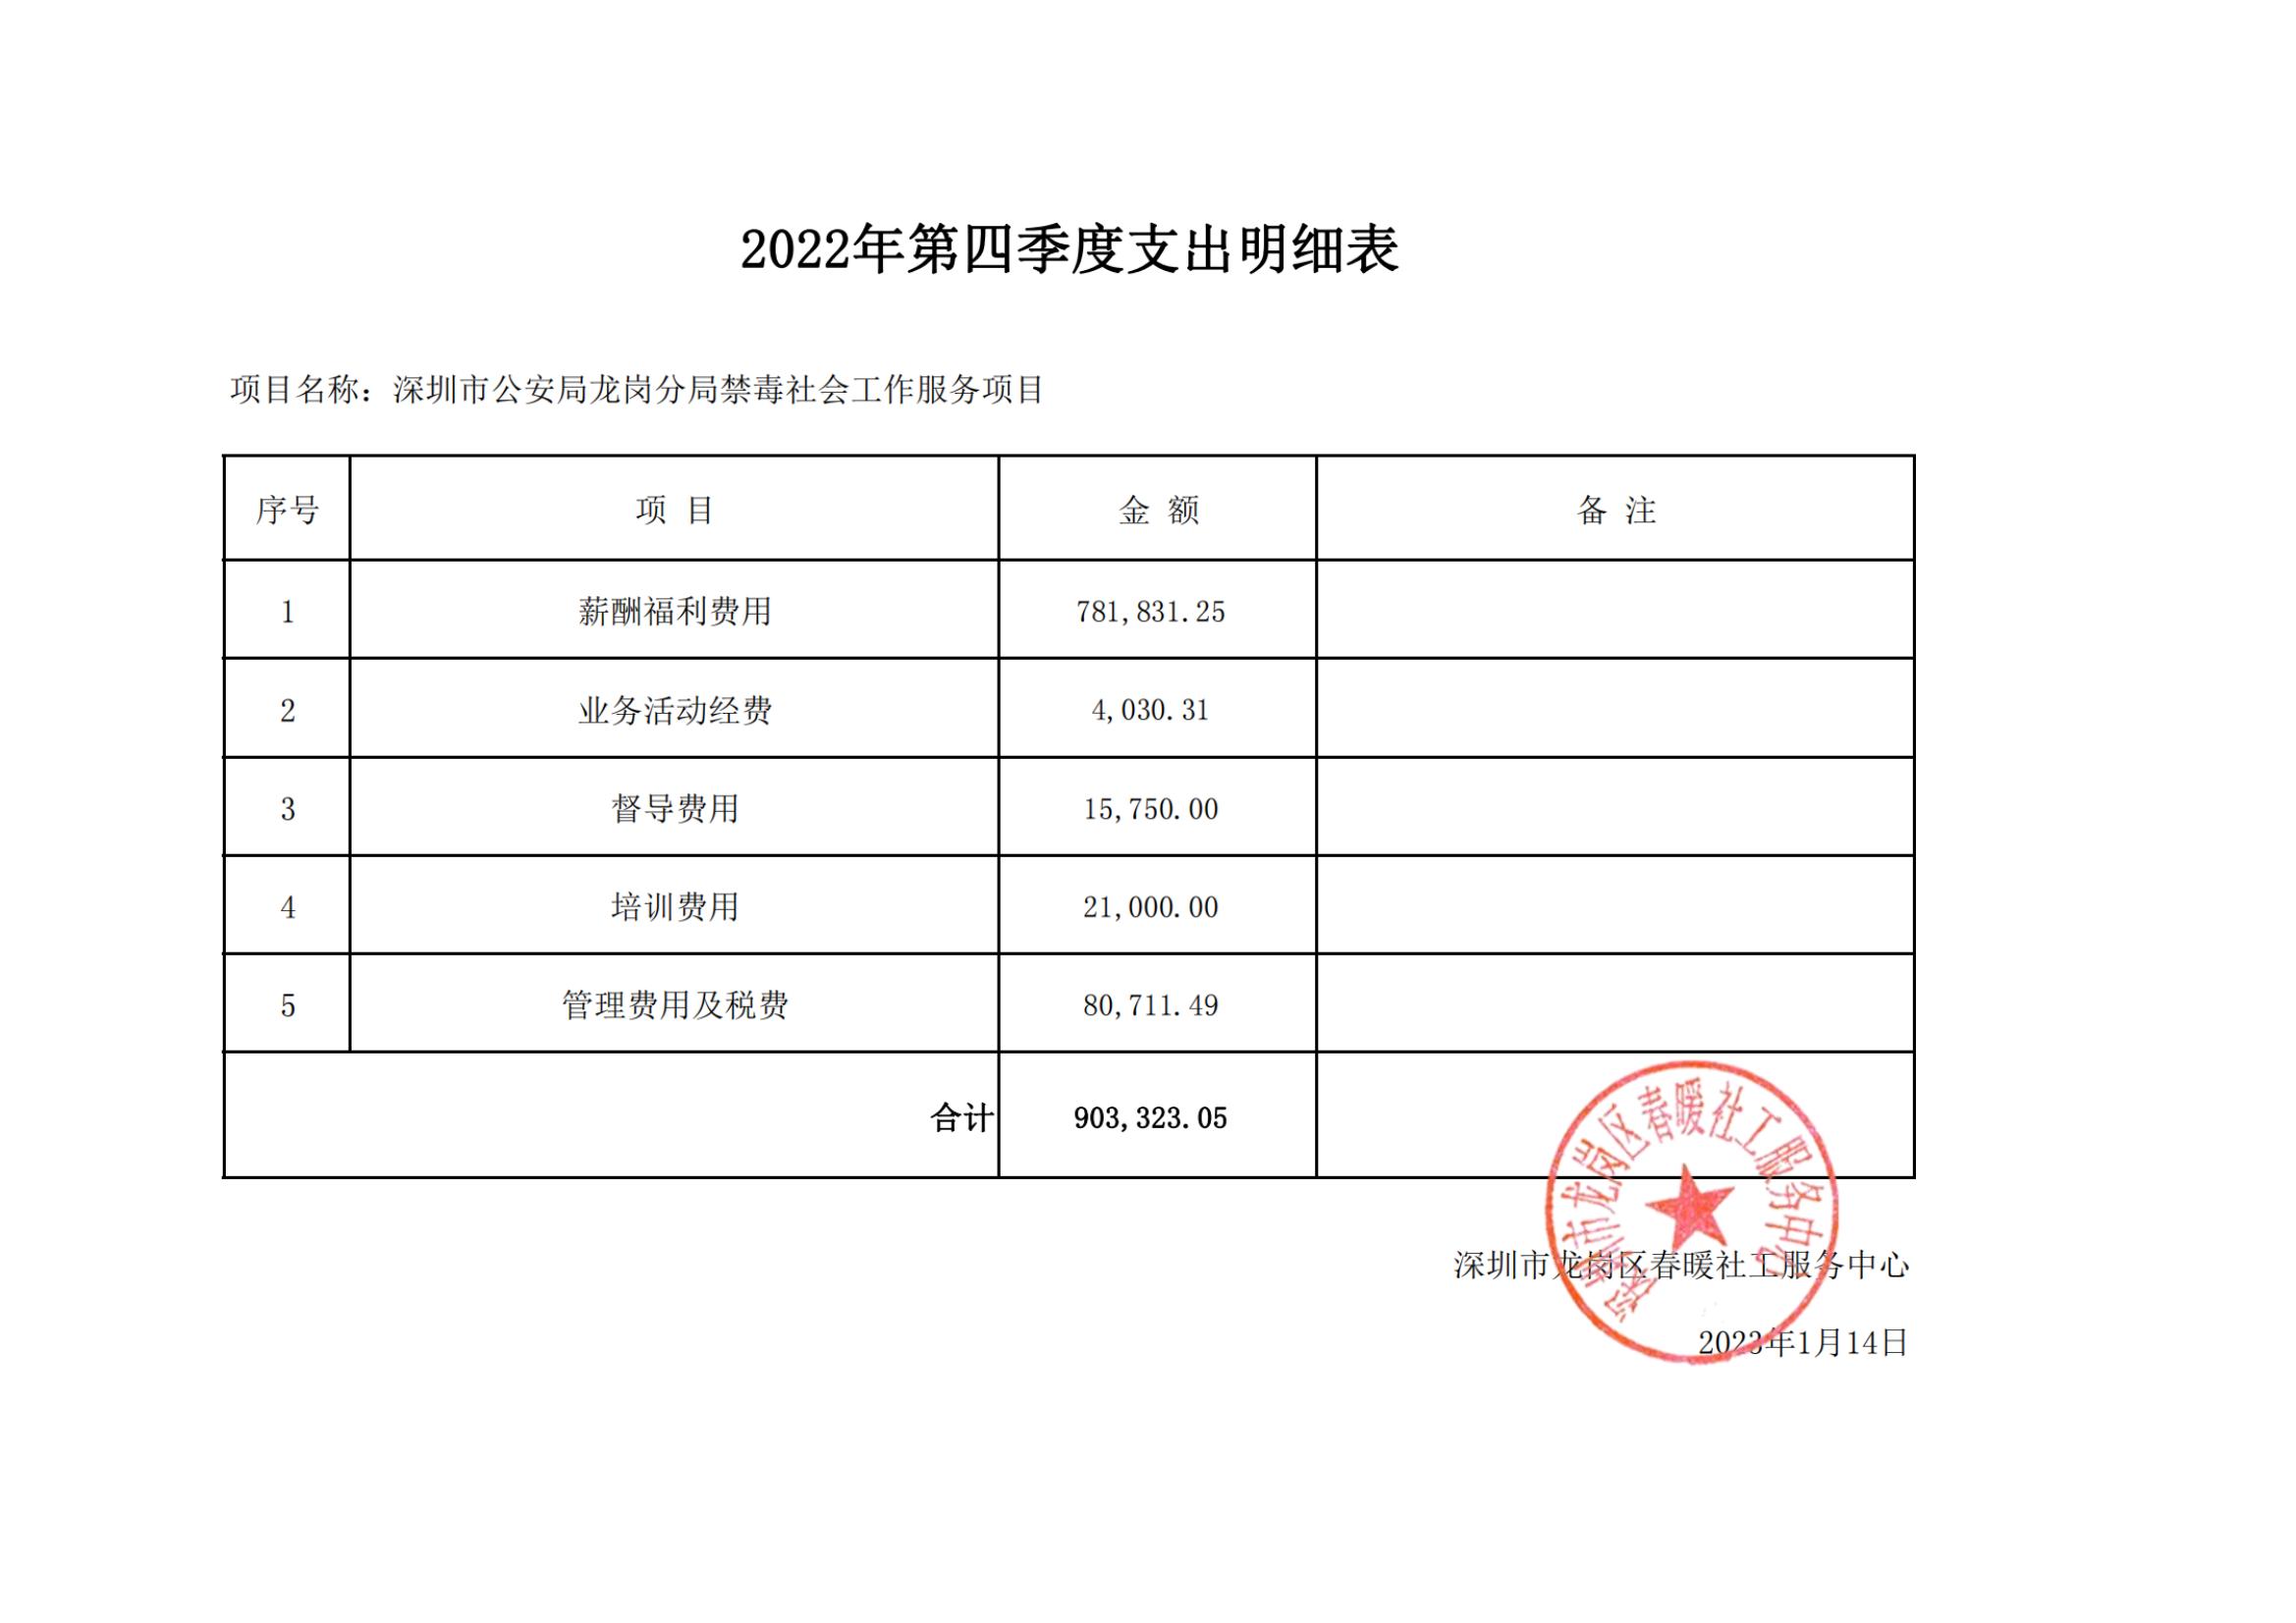 深圳市公安局龙岗分局社会工作服务项目（布吉、南湾、吉华）2022年第四季度支出明细表